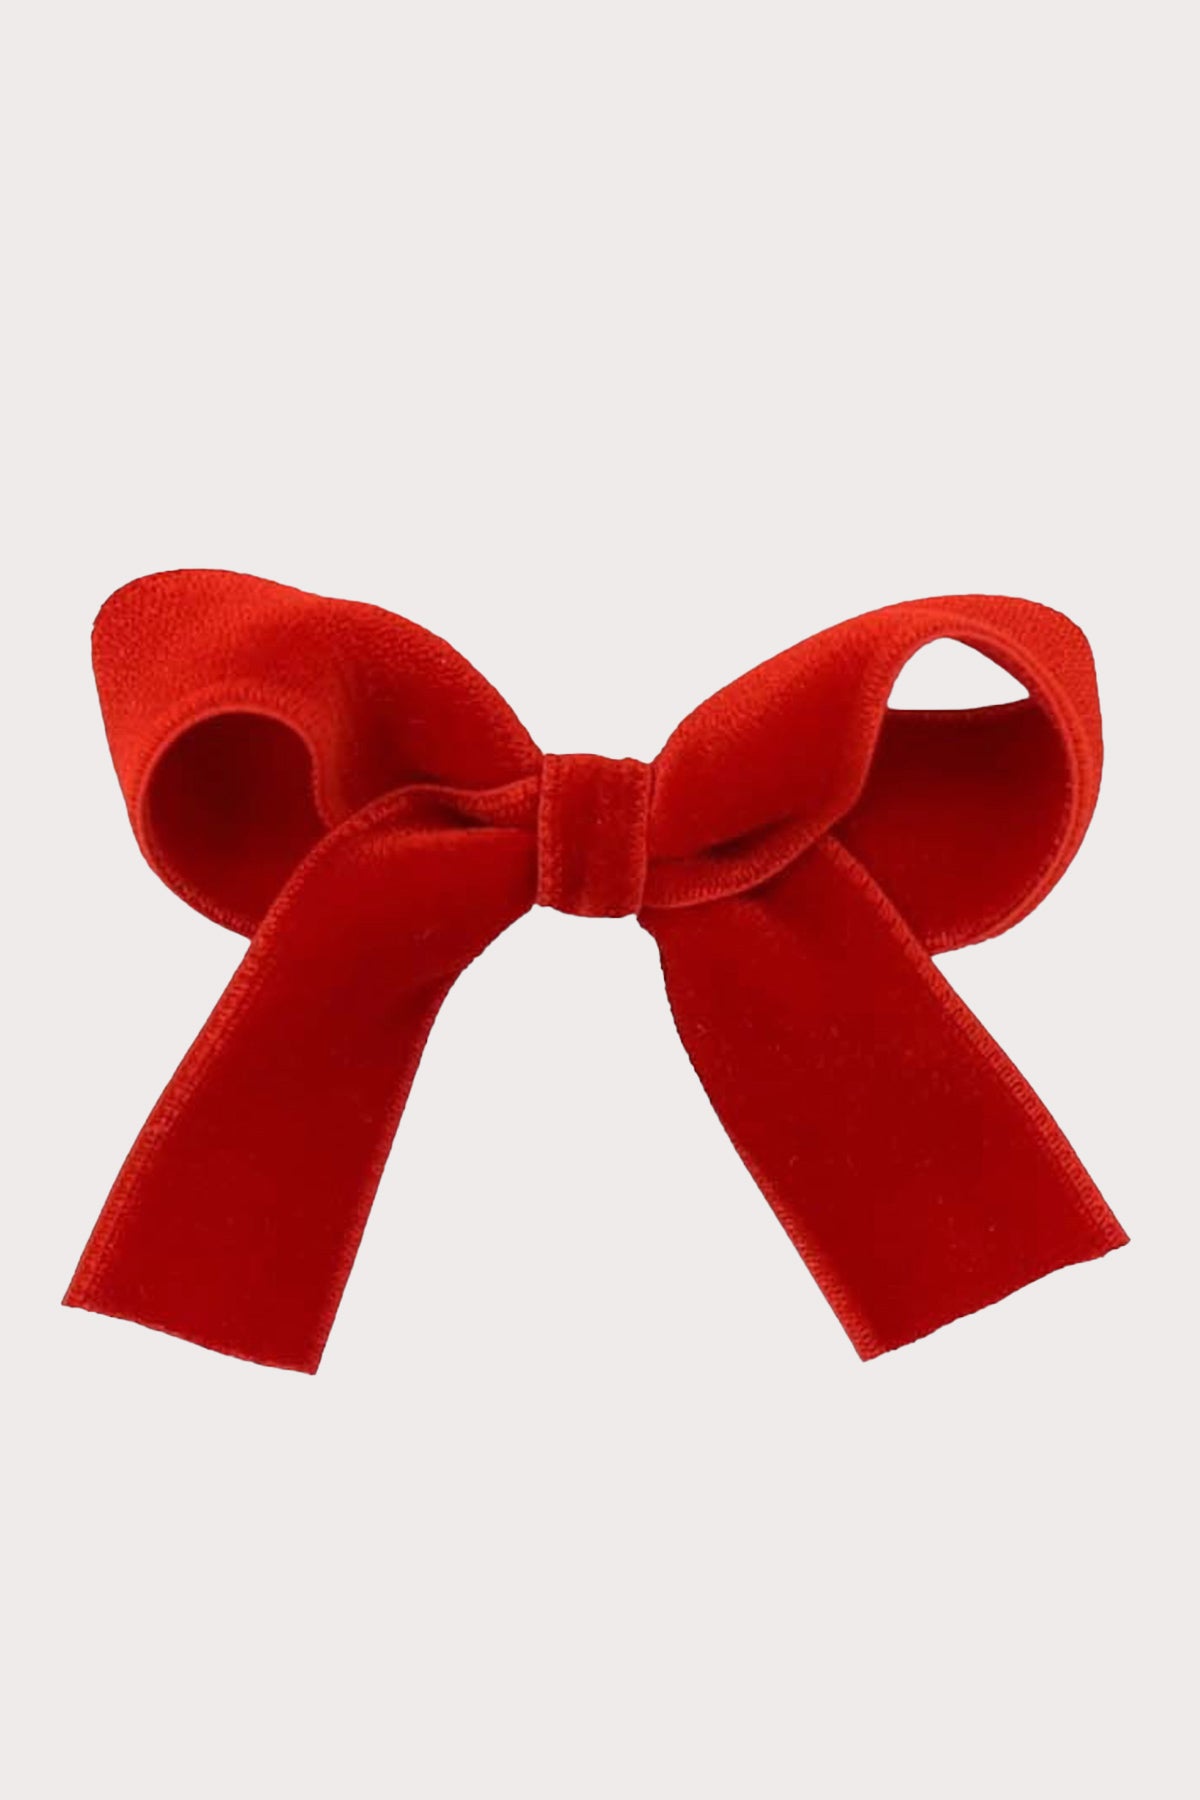 olilia designs velvet hair bow red